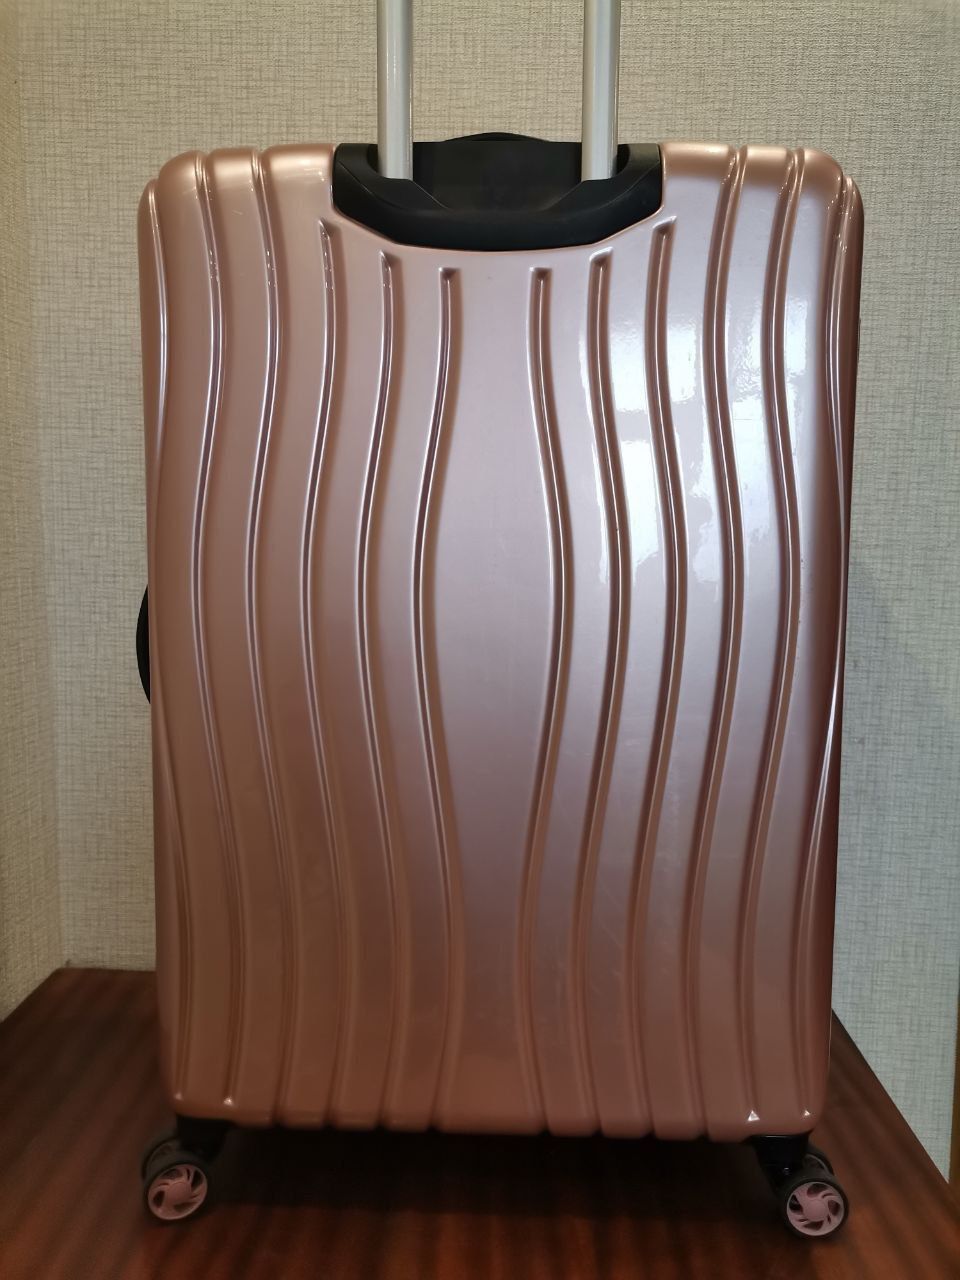 Ідеал! 78 см валіза велика чемодан большой купить в Украине